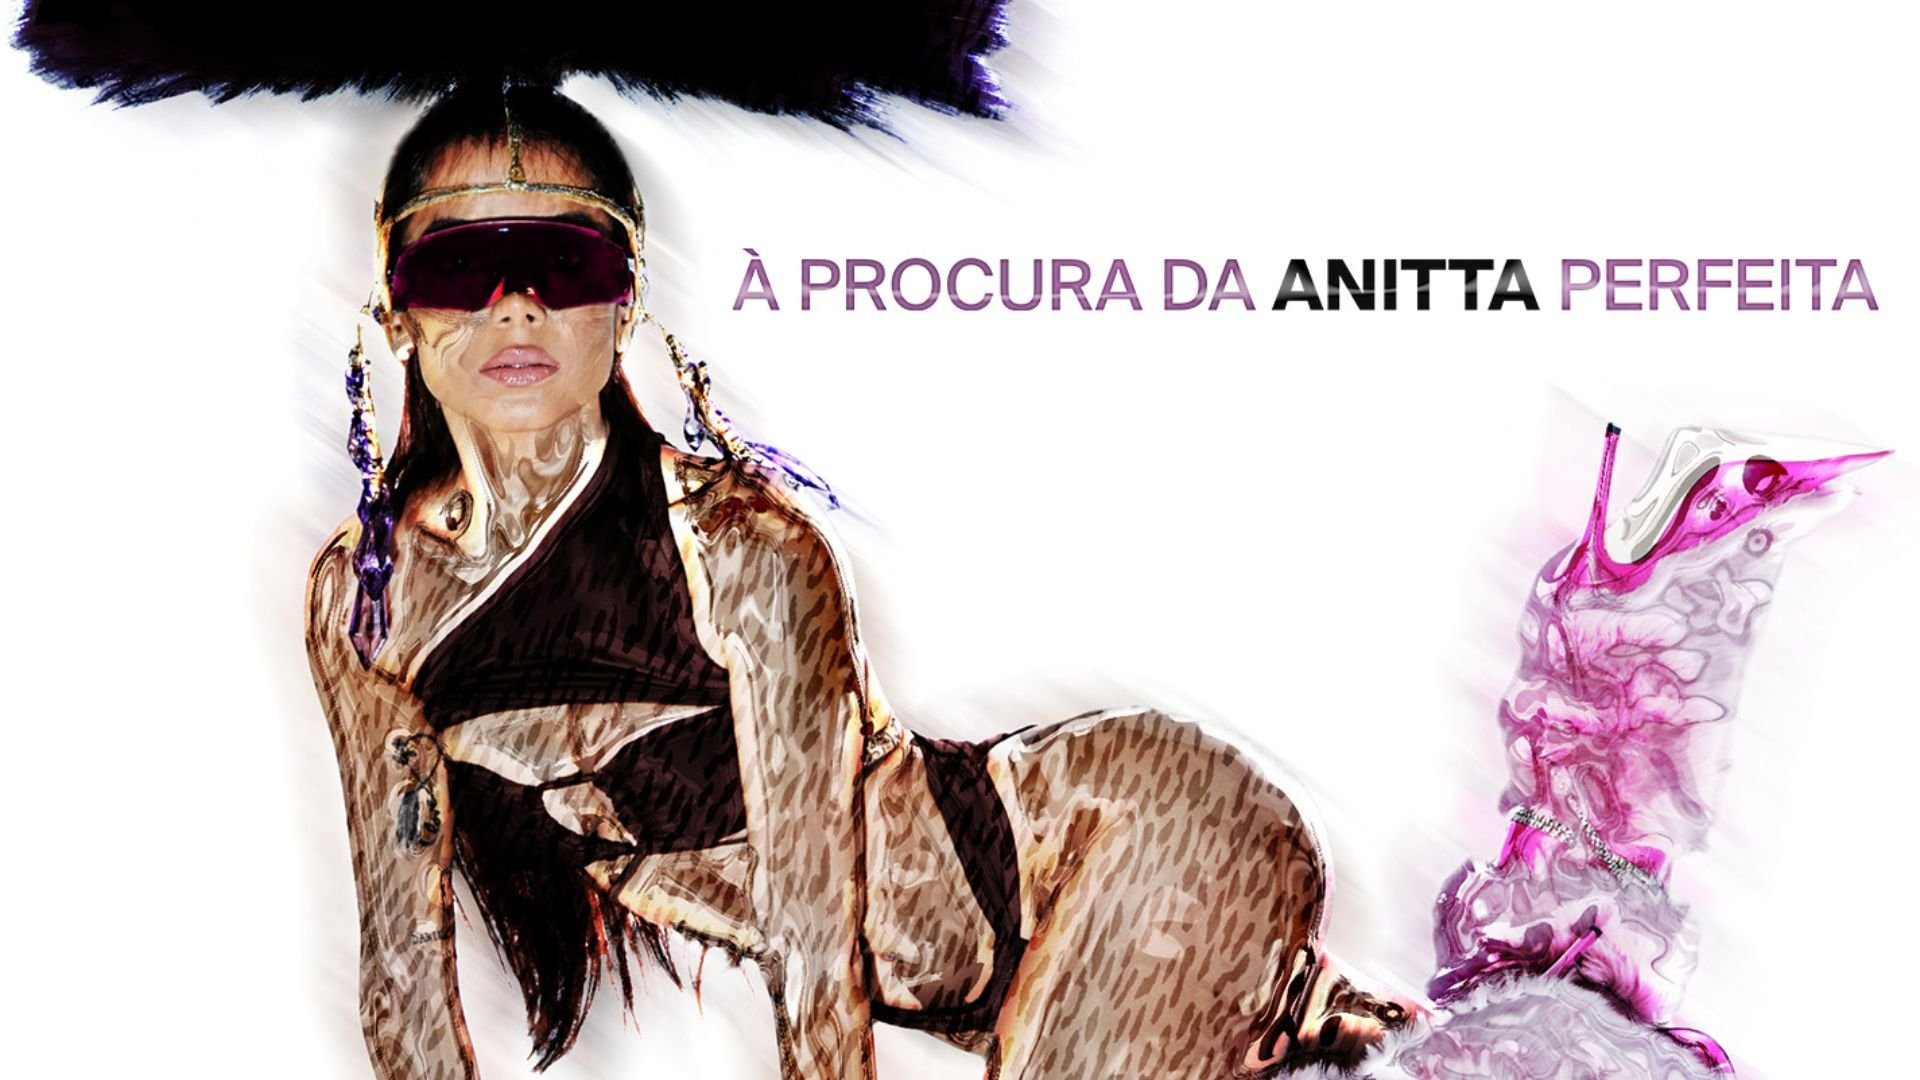 'À Procura da Anitta Perfeita' conta com colaborações de Maiara & Maraisa, Wesley Safadão, Pocah, Lexa e Costa Gold